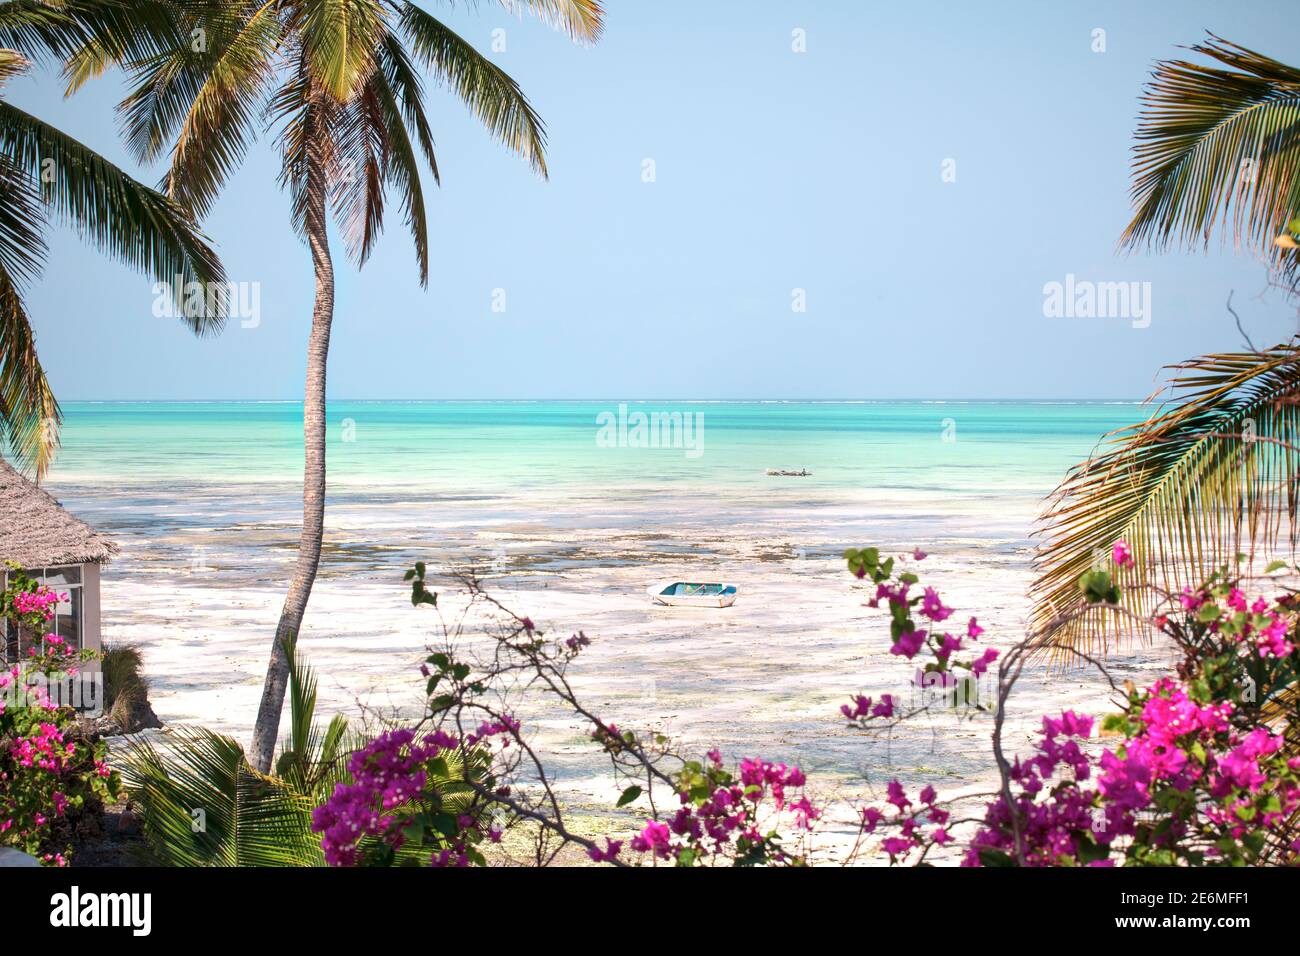 Bellissimo paesaggio paradiso dell'isola di Zanzibar. Clima tropicale, spiaggia con oceano turchese, palme da cocco, fiori e barca di legno. Foto Stock